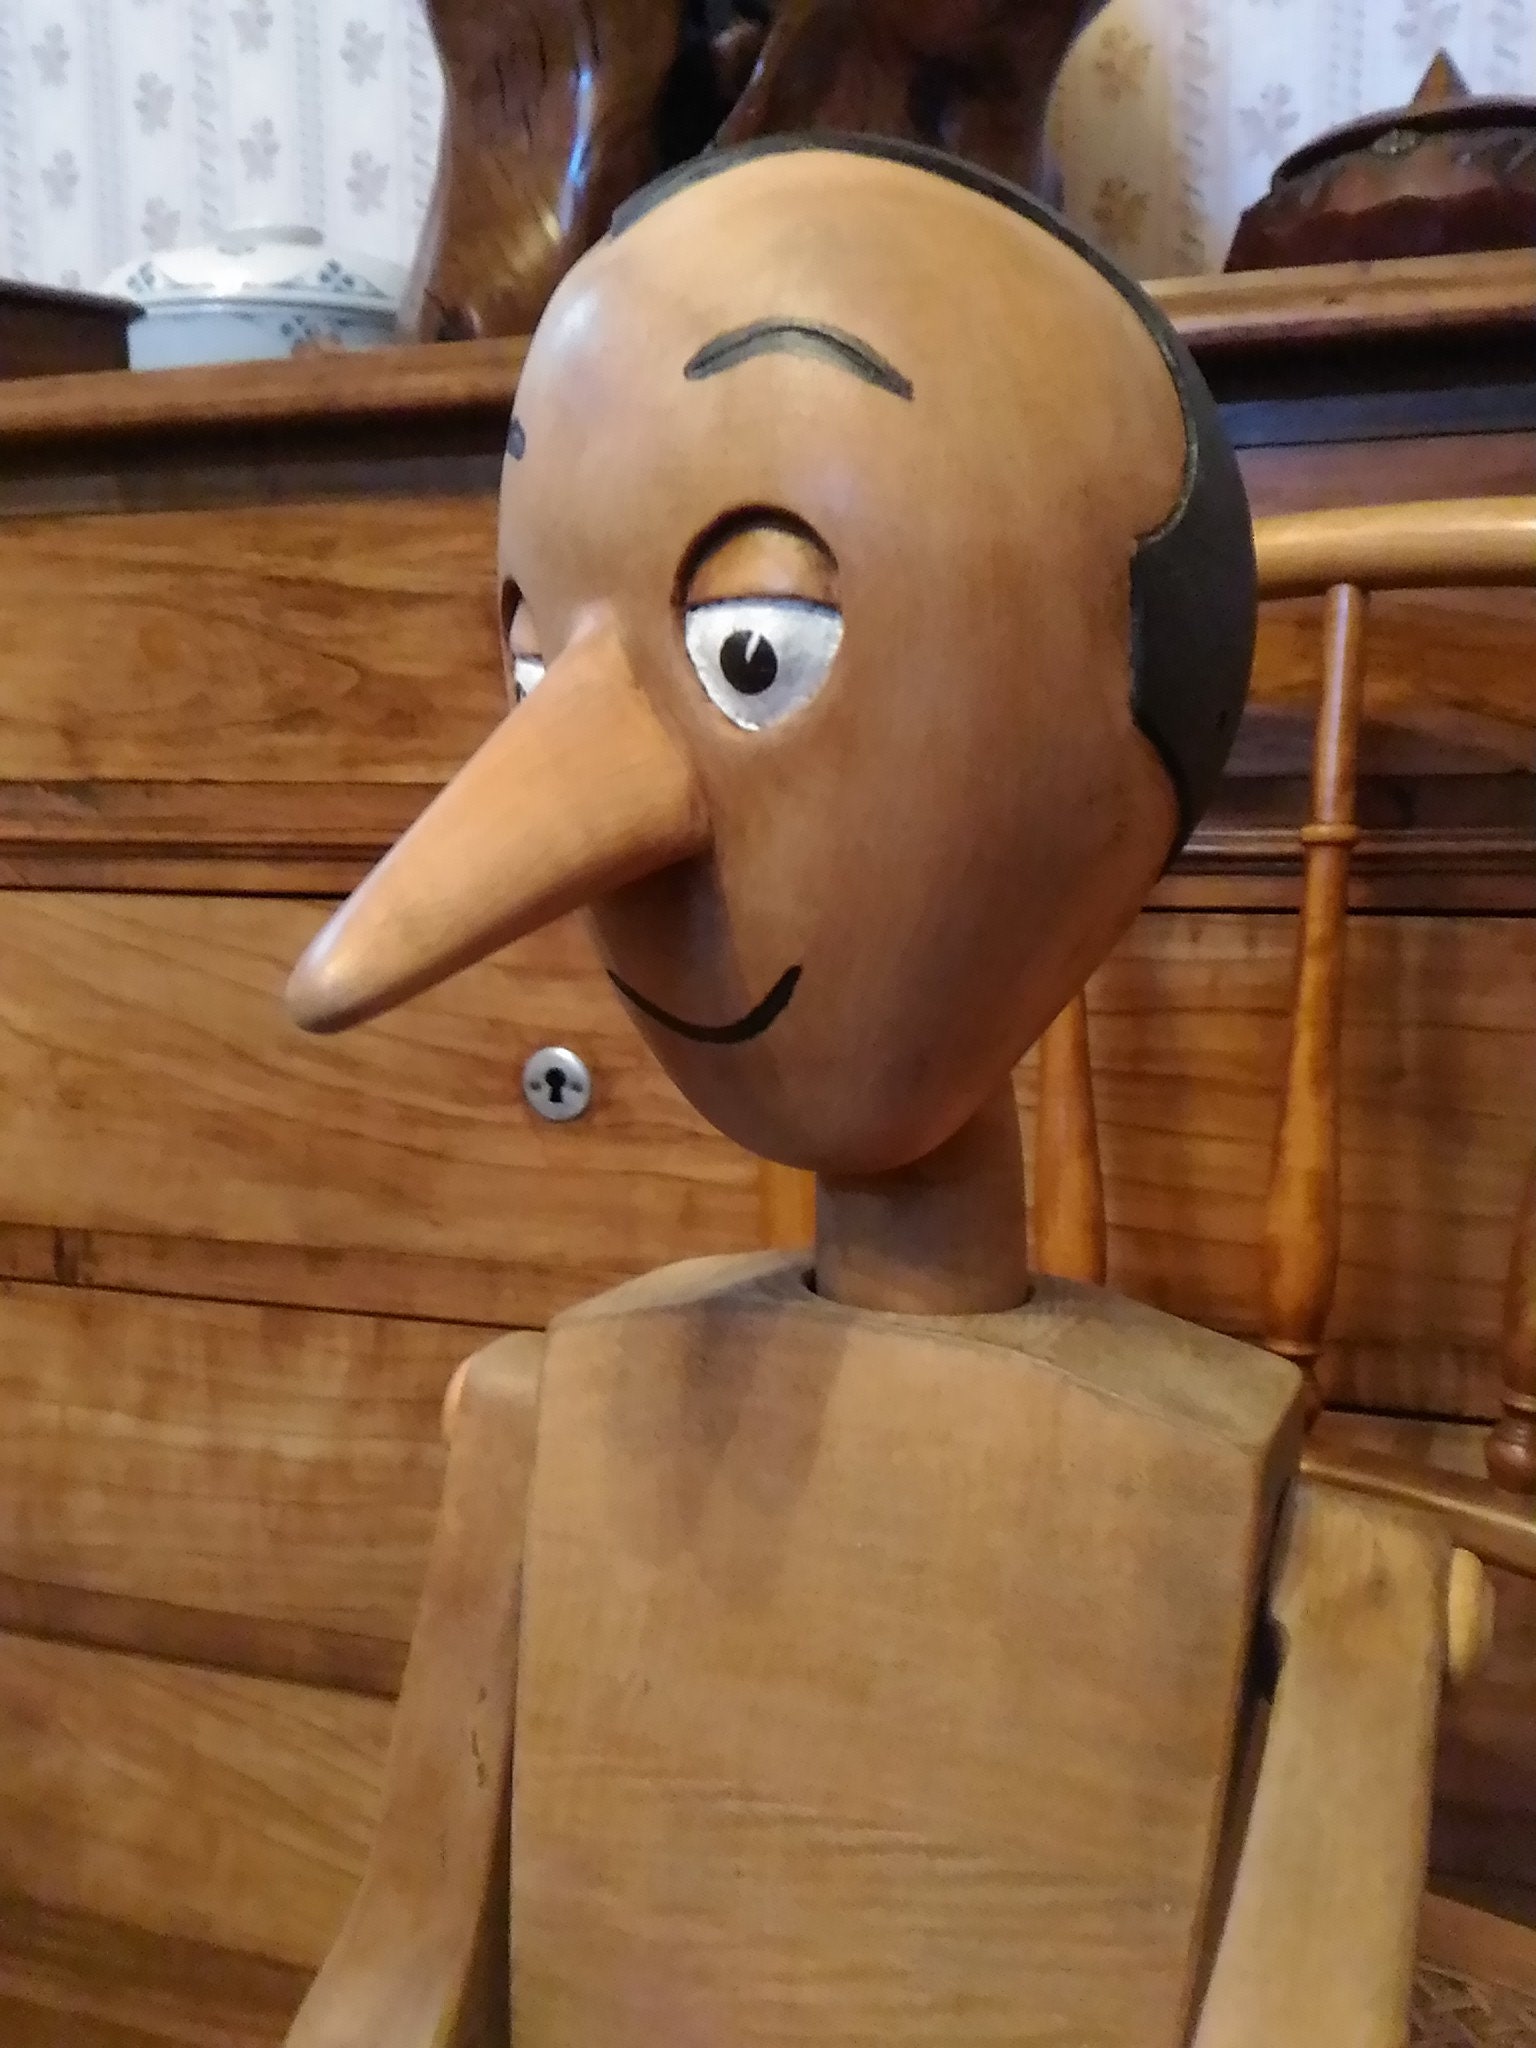 Ancienne marionnette Pinocchio, sculpture en bois soigneusement